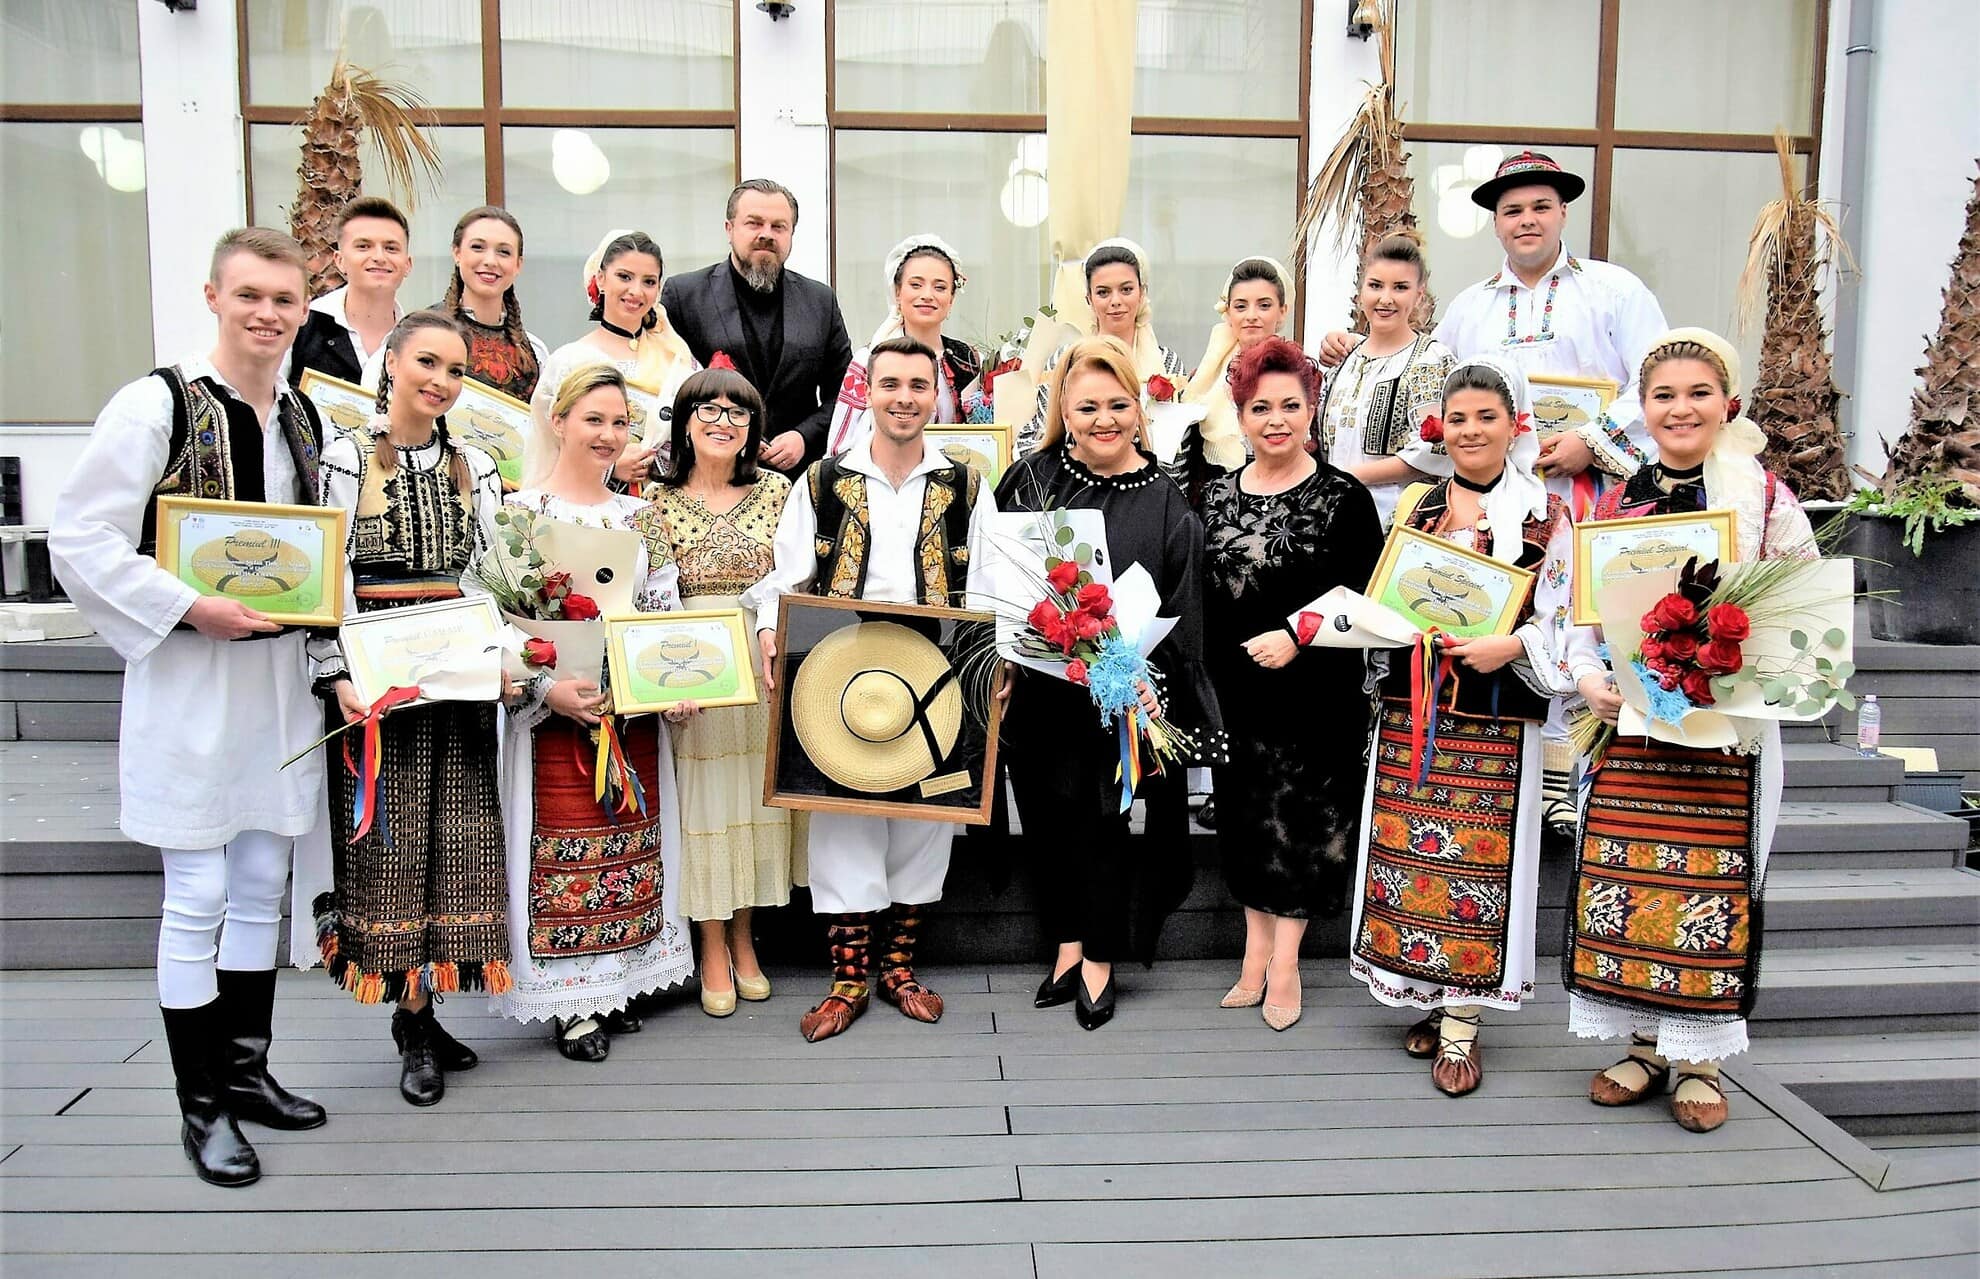 foto muzică și voie bună la festivalul ”lucreția ciobanu” - zeci de artiști de muzică populară au încântat publicul